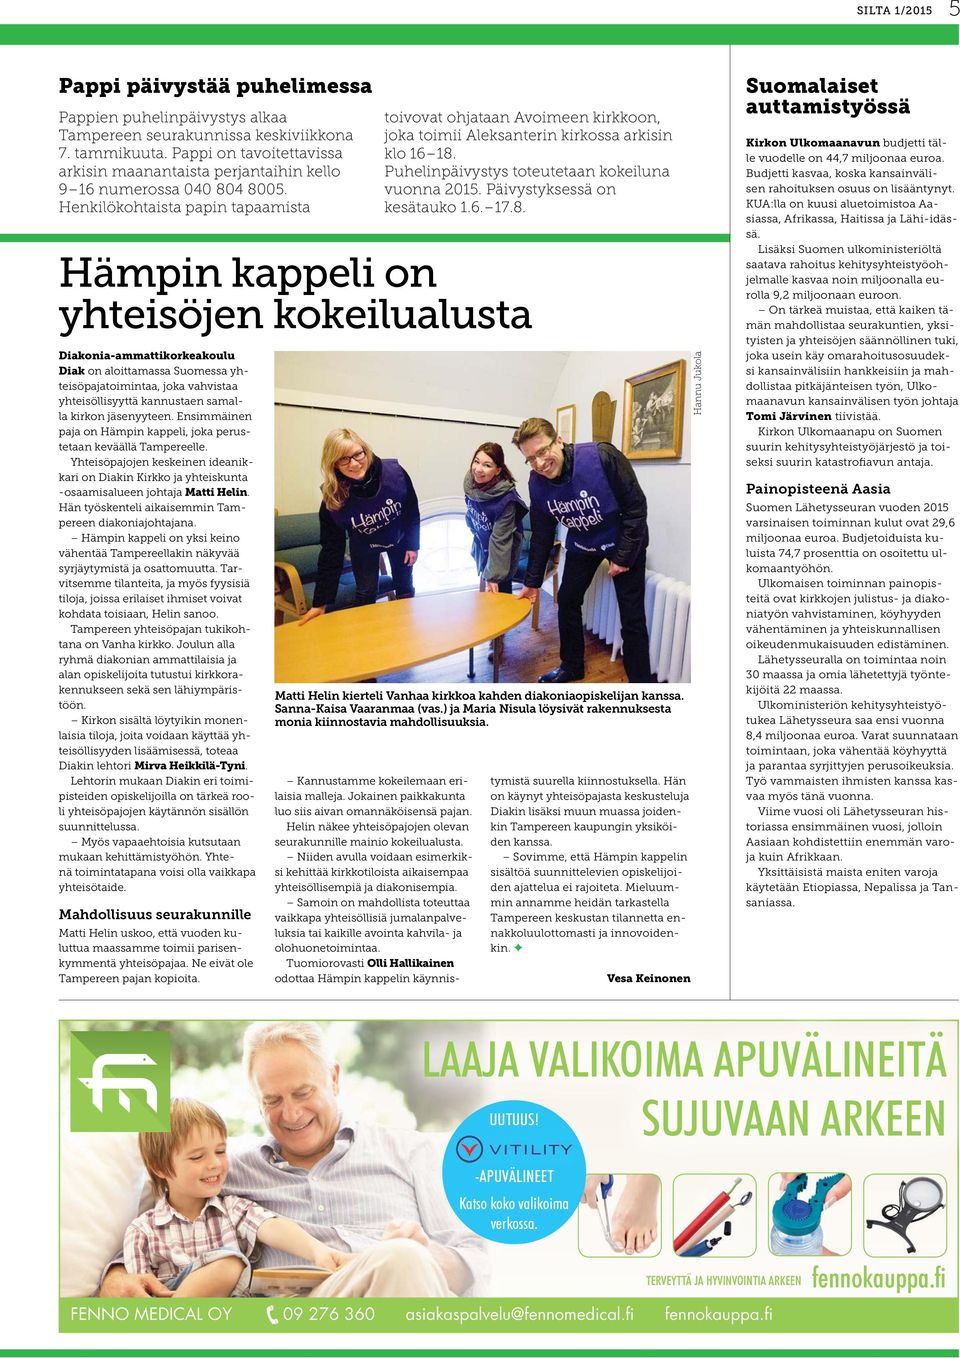 Henkilökohtaista papin tapaamista Hämpin kappeli on yhteisöjen kokeilualusta Diakonia-ammattikorkeakoulu Diak on aloittamassa Suomessa yhteisöpajatoimintaa, joka vahvistaa yhteisöllisyyttä kannustaen